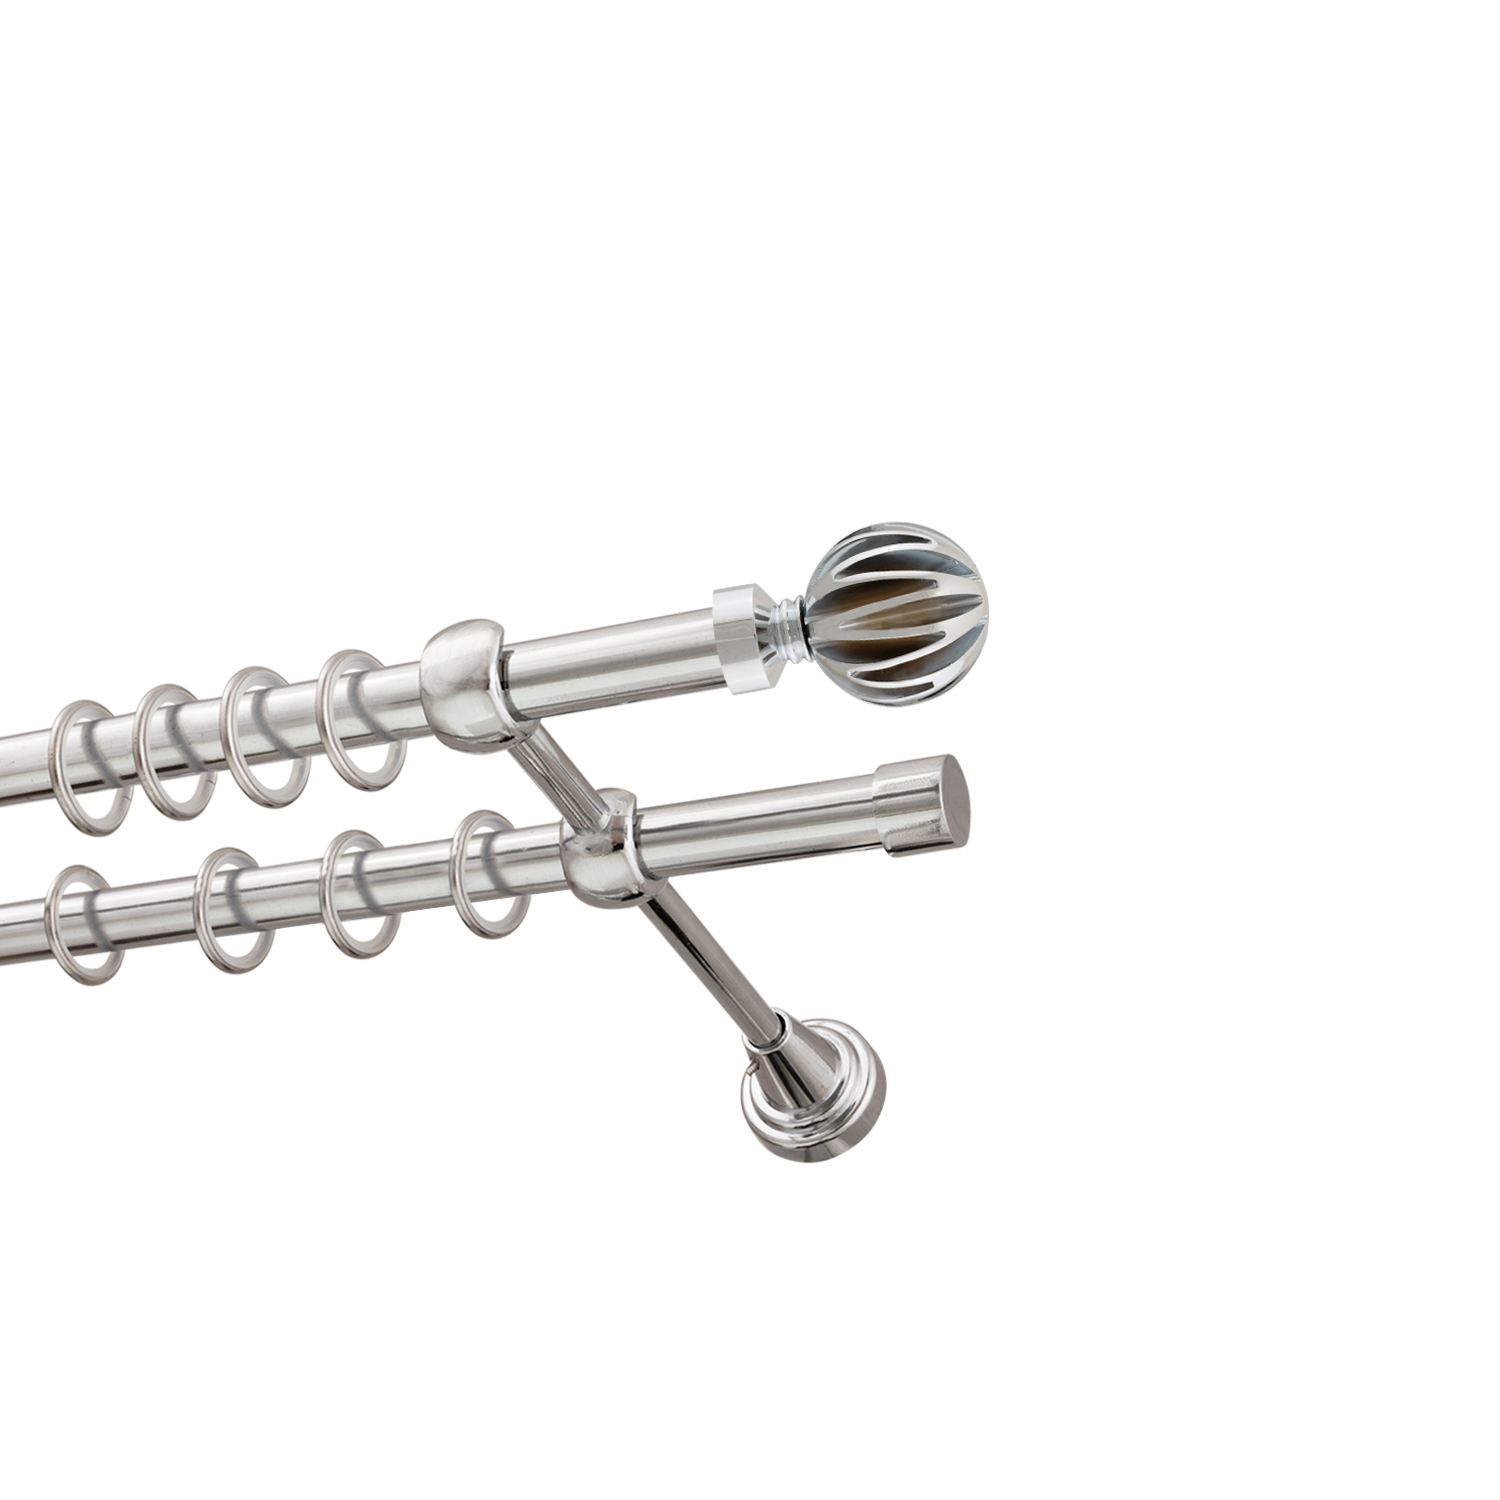 Металлический карниз для штор Шафран, двухрядный 16/16 мм, серебро, гладкая штанга, длина 240 см